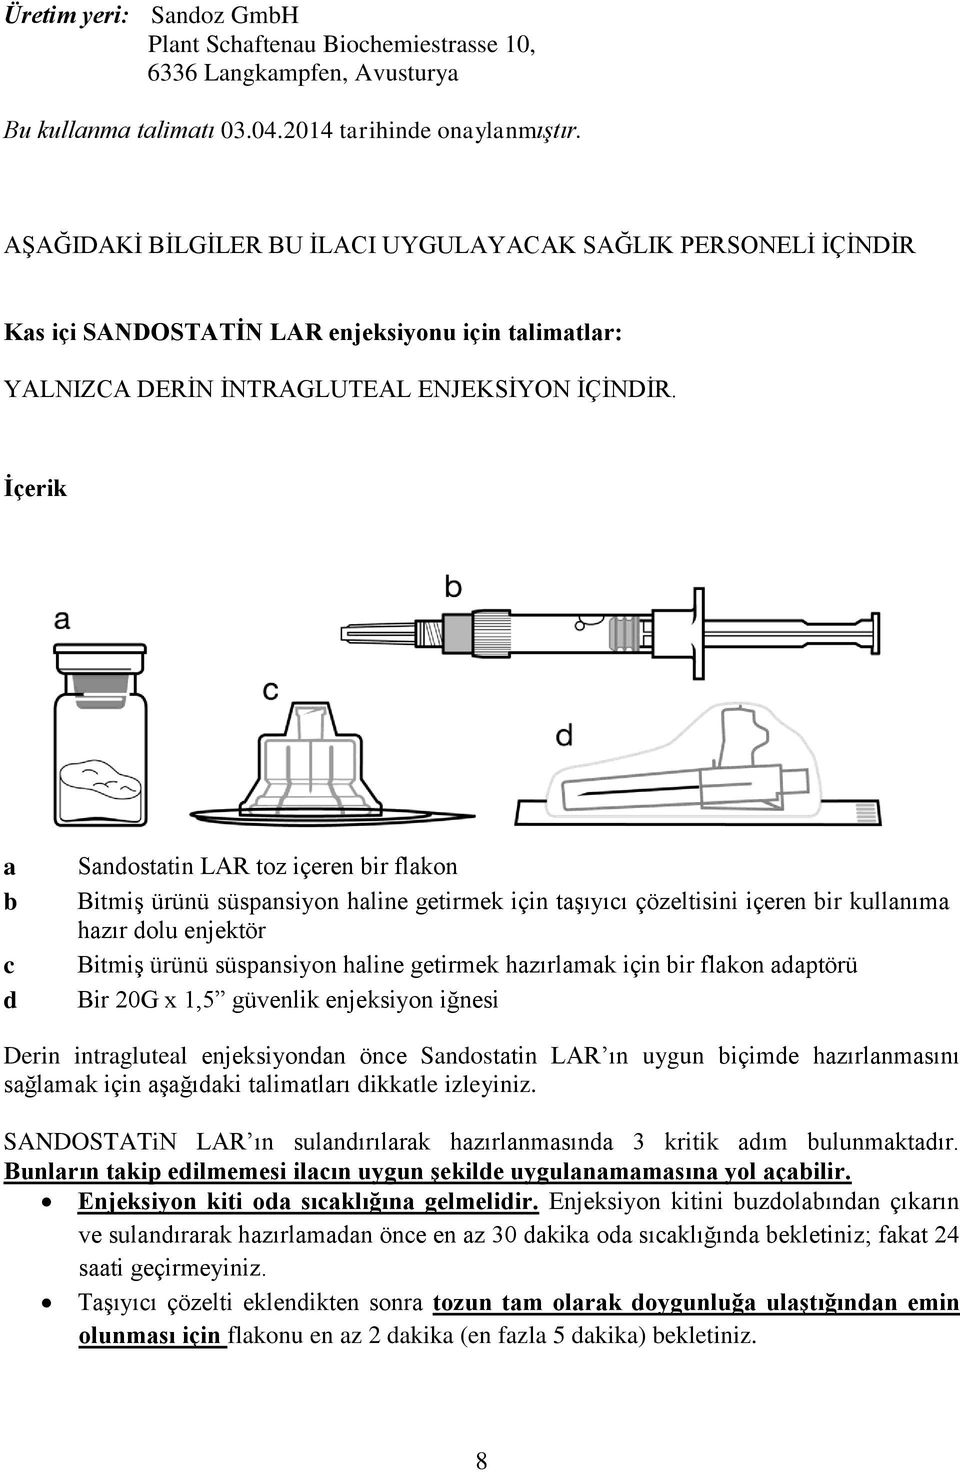 İçerik a b c d Sandostatin LAR toz içeren bir flakon Bitmiş ürünü süspansiyon haline getirmek için taşıyıcı çözeltisini içeren bir kullanıma hazır dolu enjektör Bitmiş ürünü süspansiyon haline